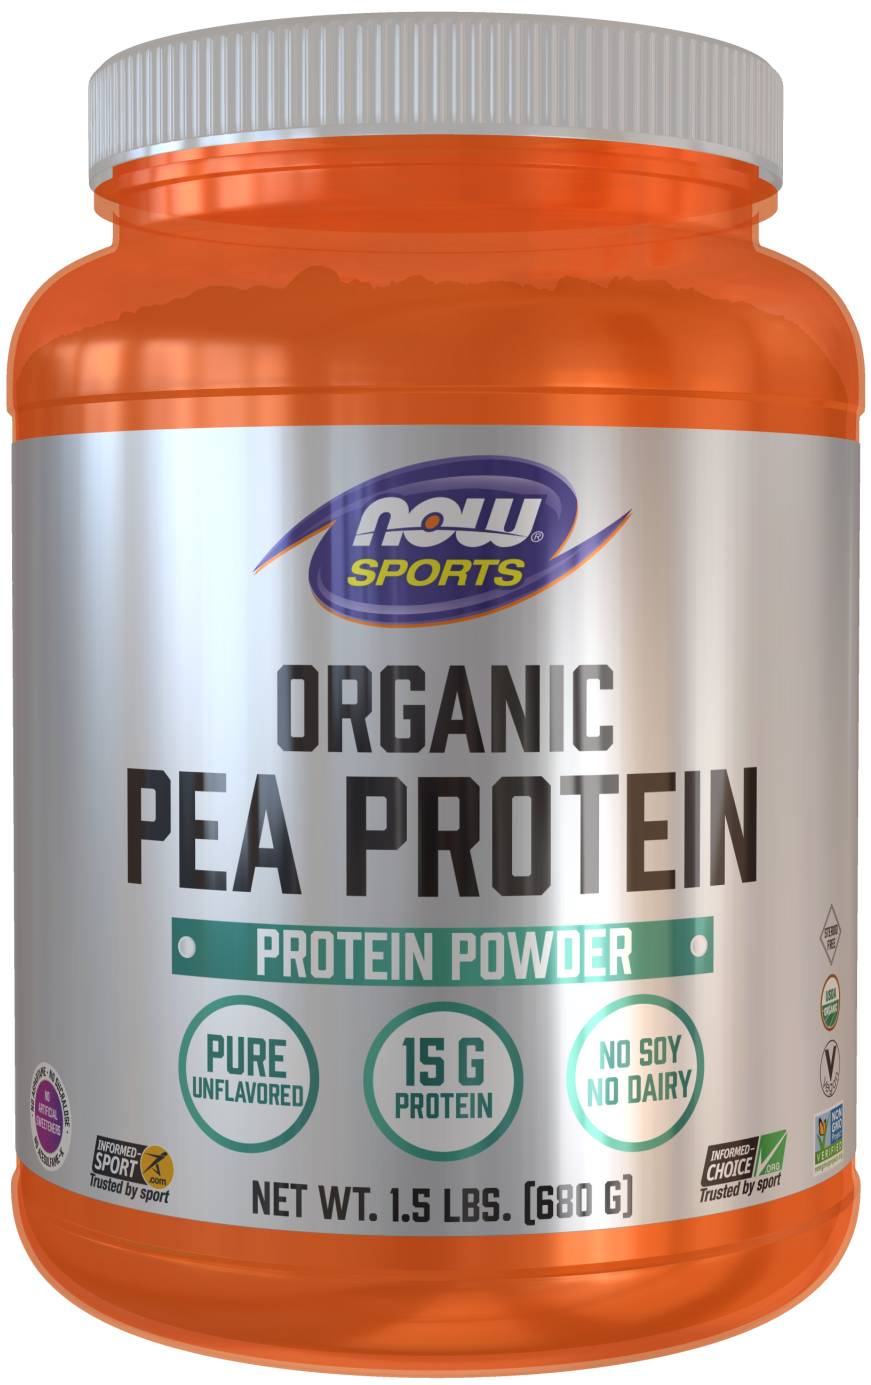 organic pea protein